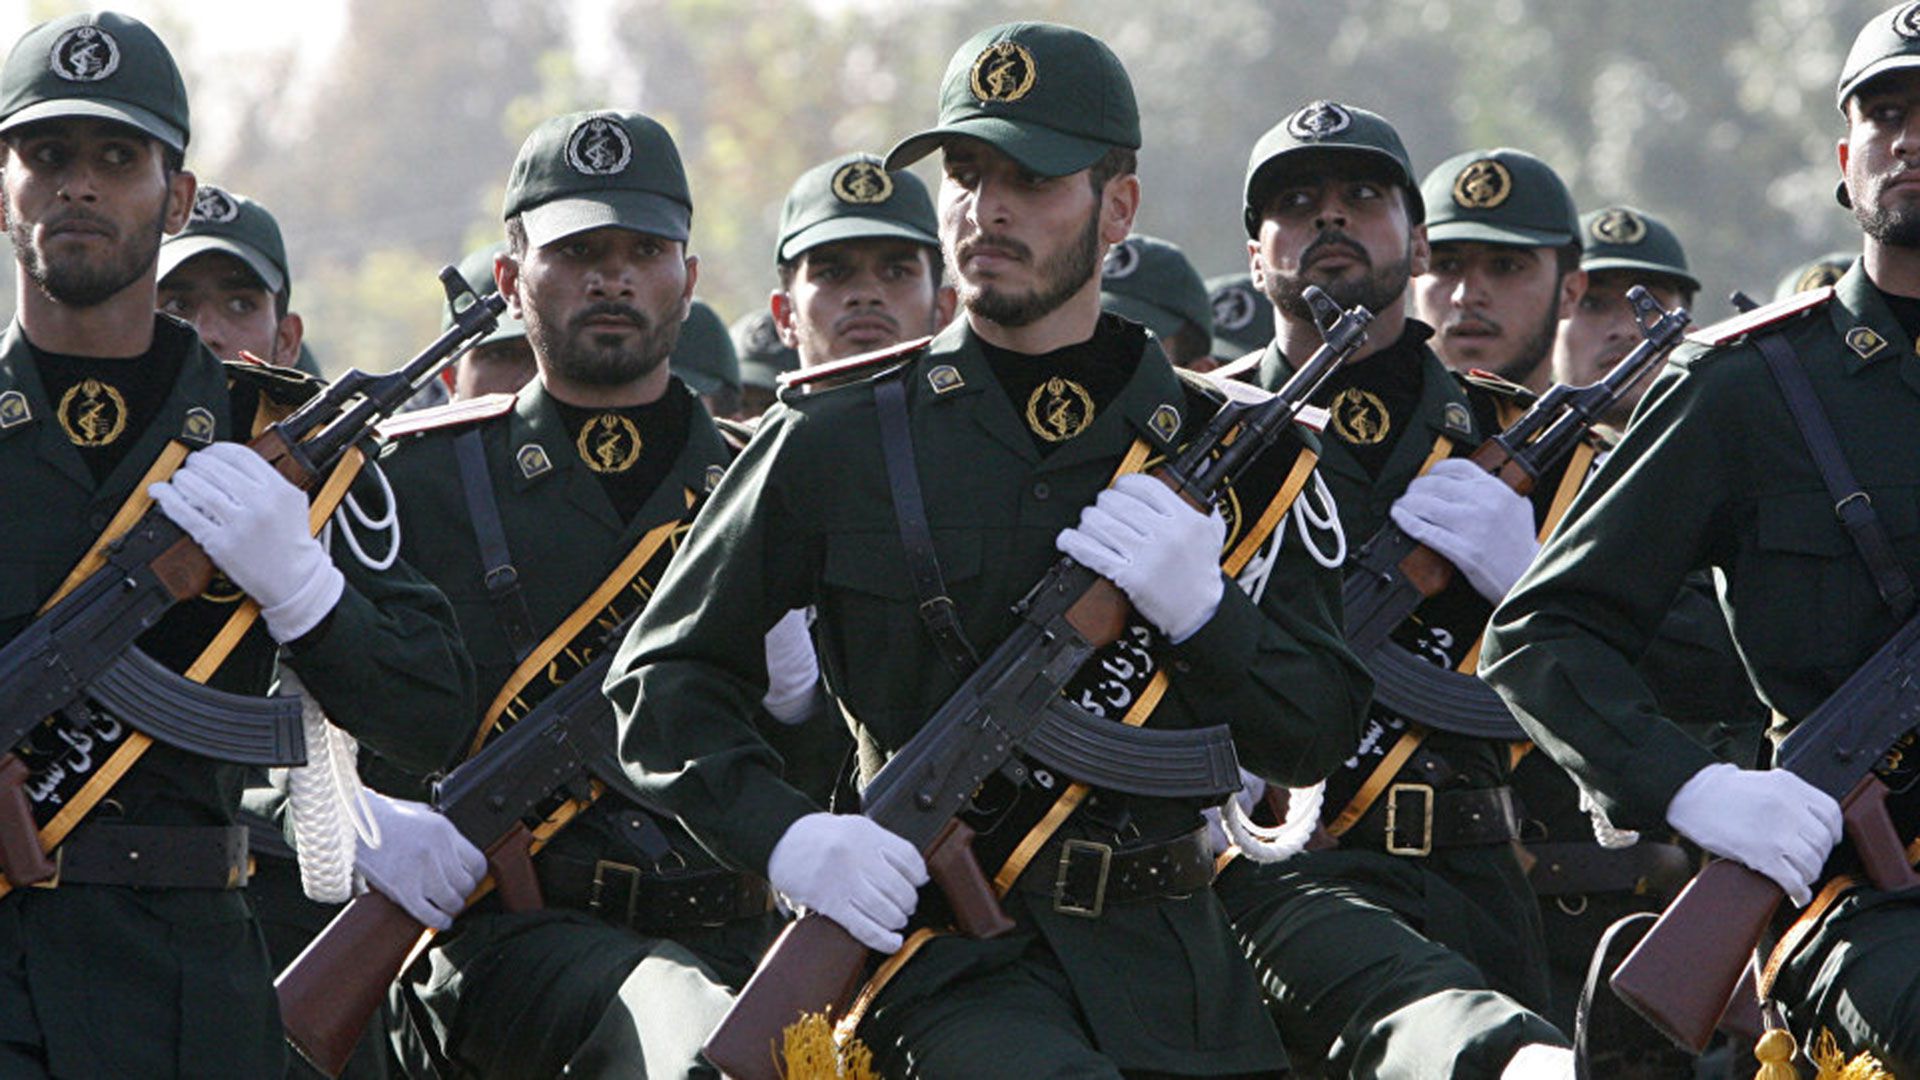 La Guardia Revolucionaria, cuerpo de élite destinado a la protección del régimen, mantiene una tensa relación con el ejército iraní, con el que compite por recursos, reclutas y roles